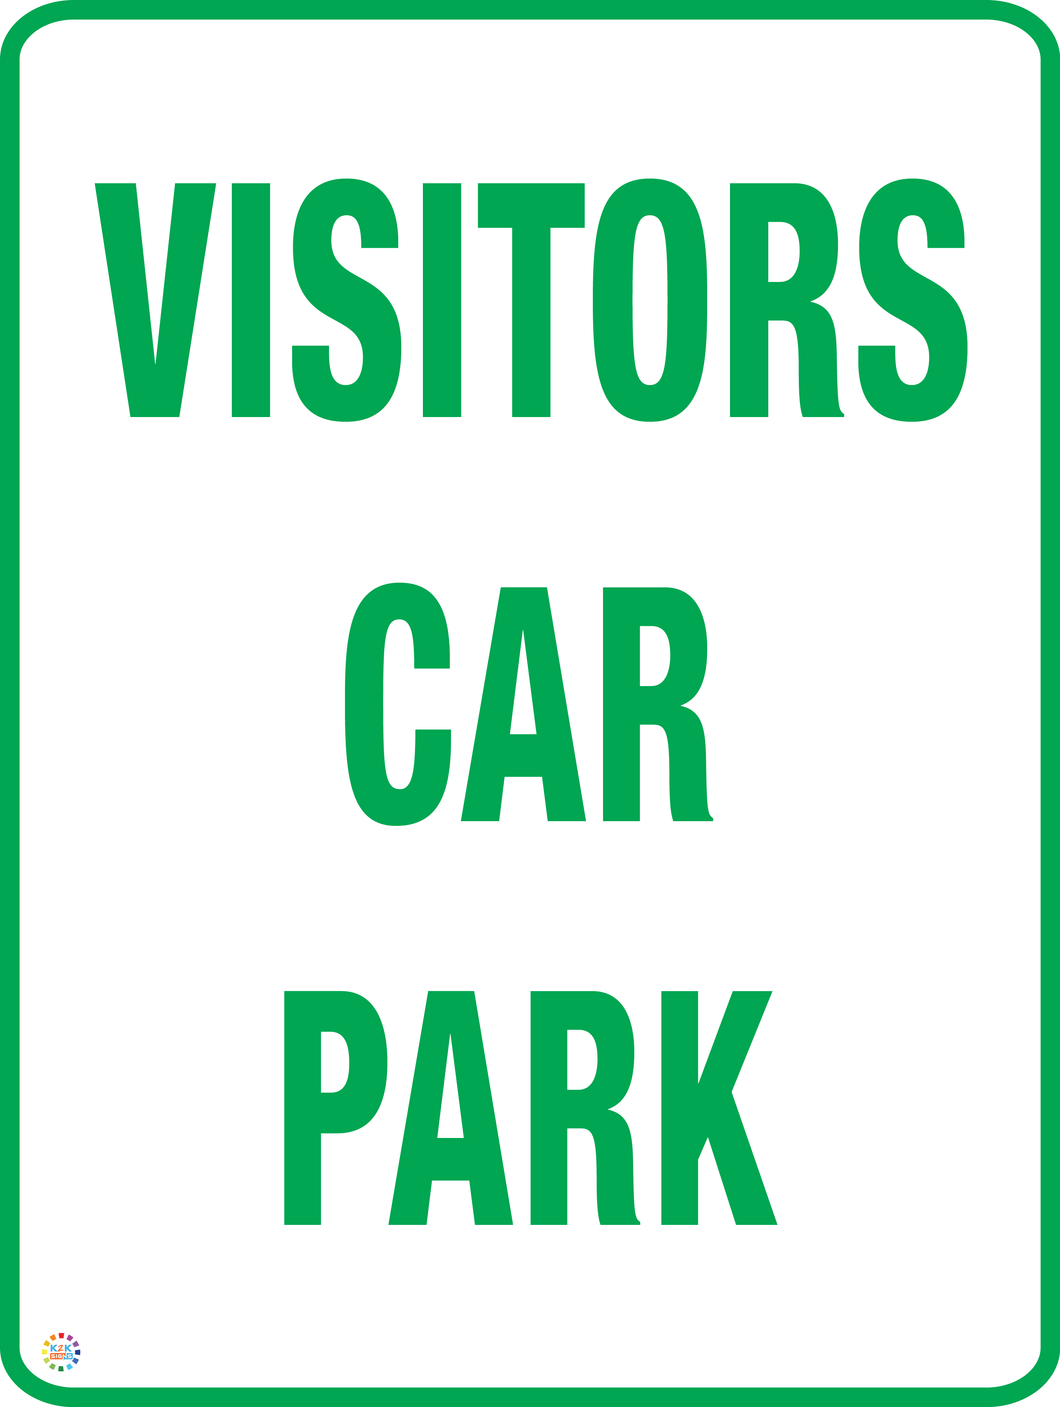 Visitors Car Park Sign